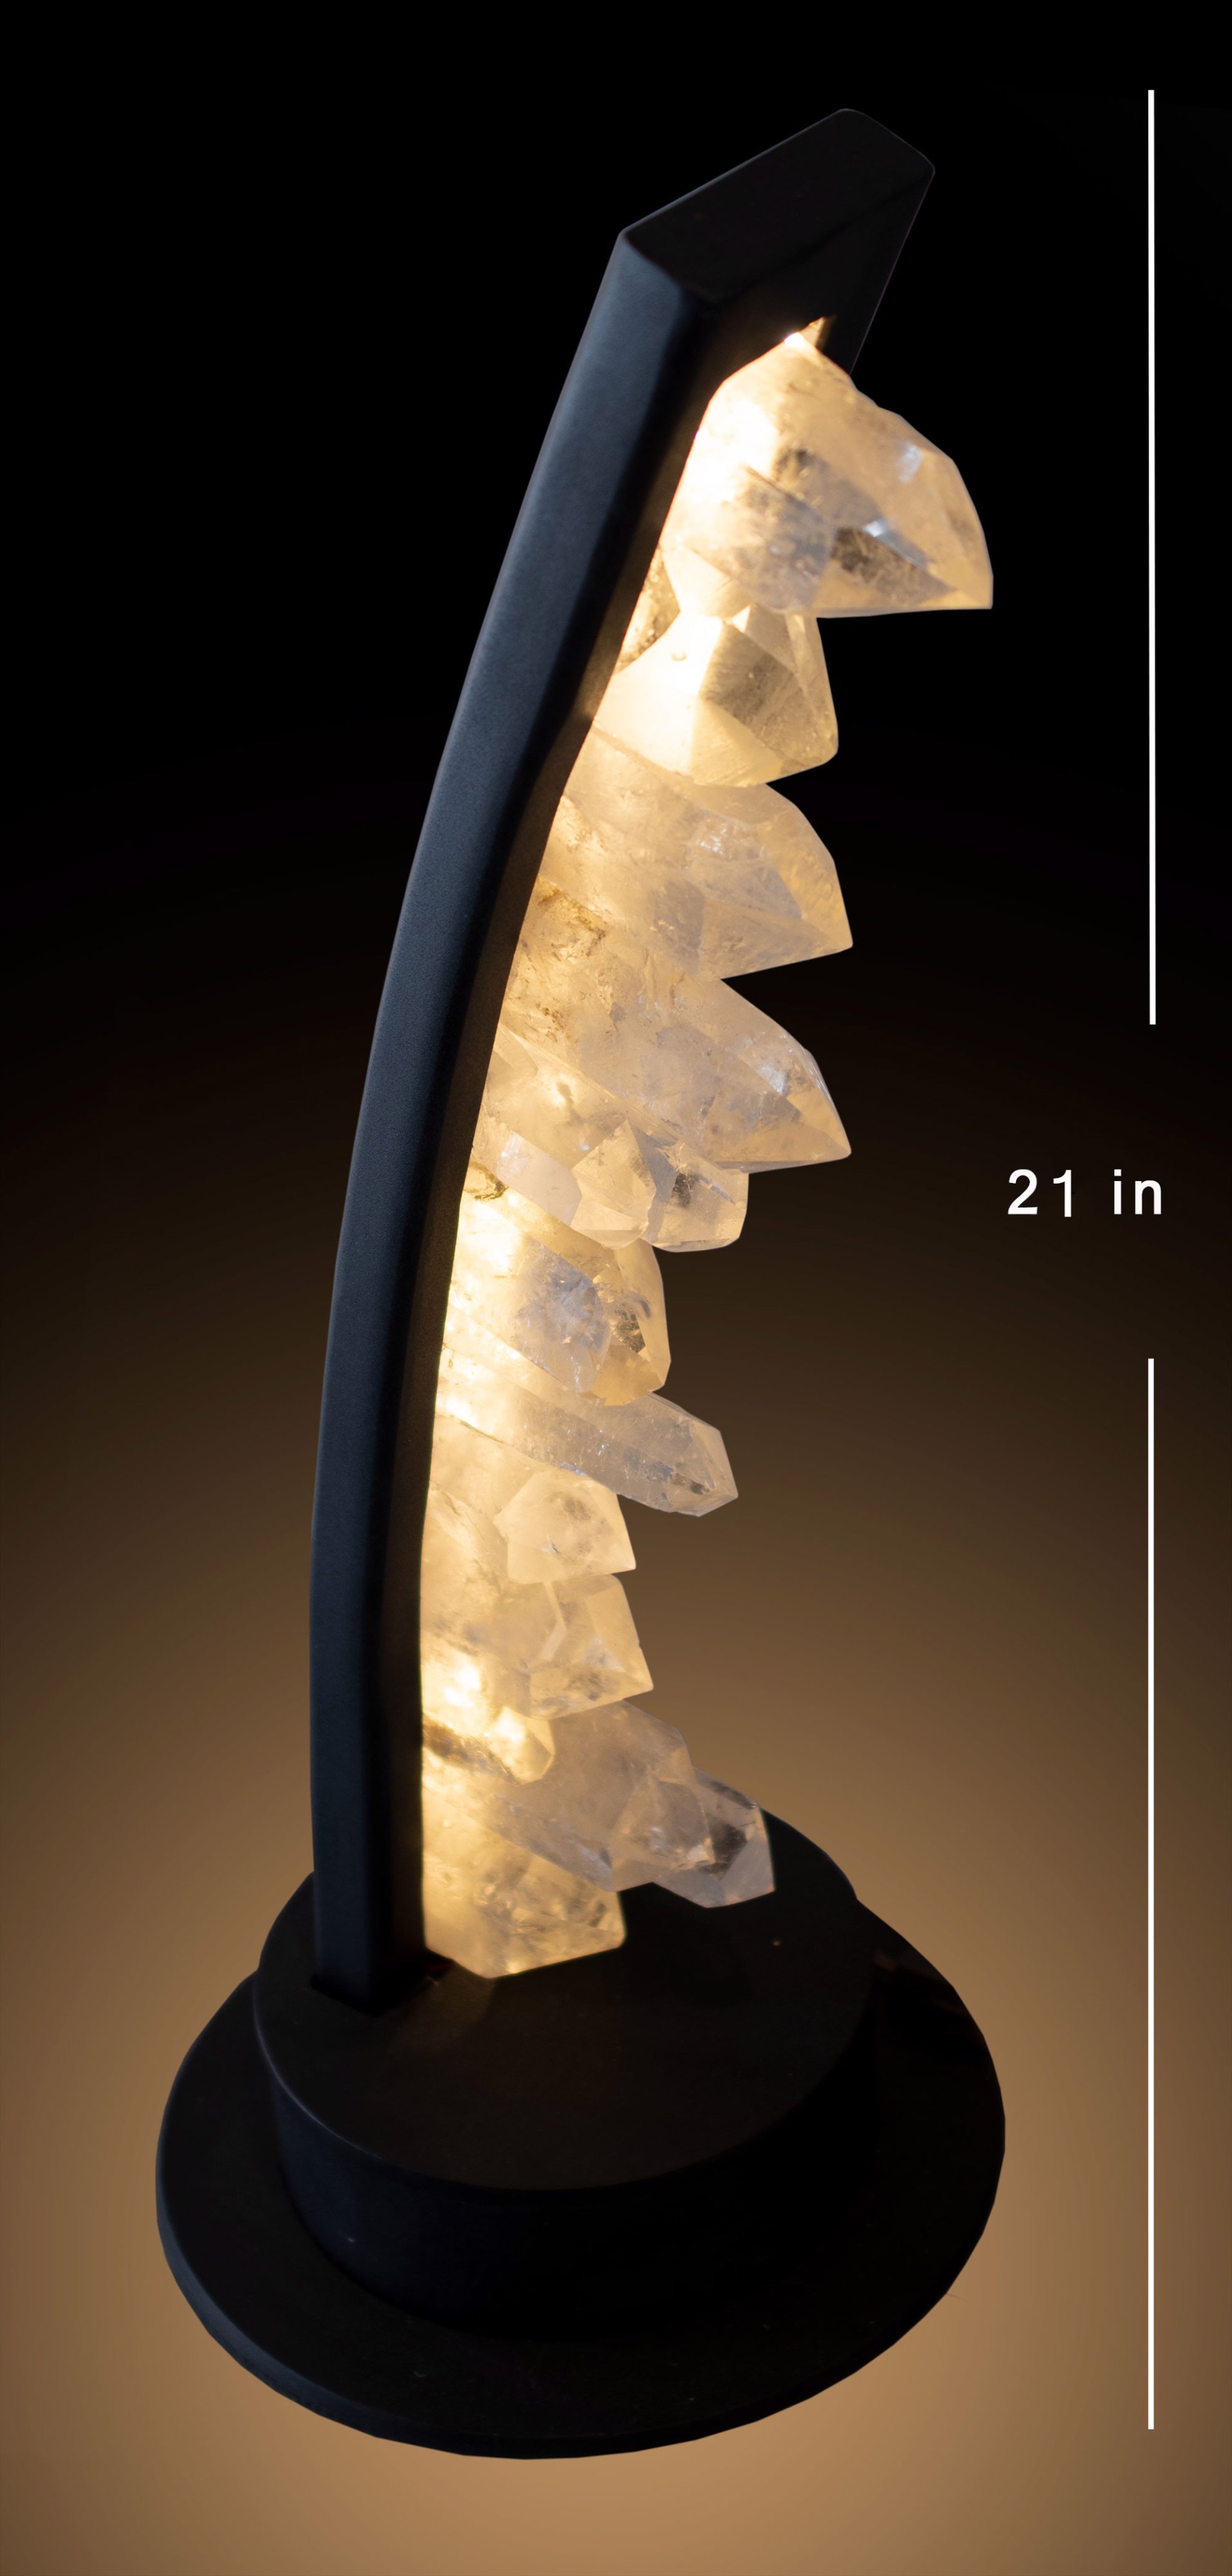 Sky-line Desk Lamp by Jim Vilona